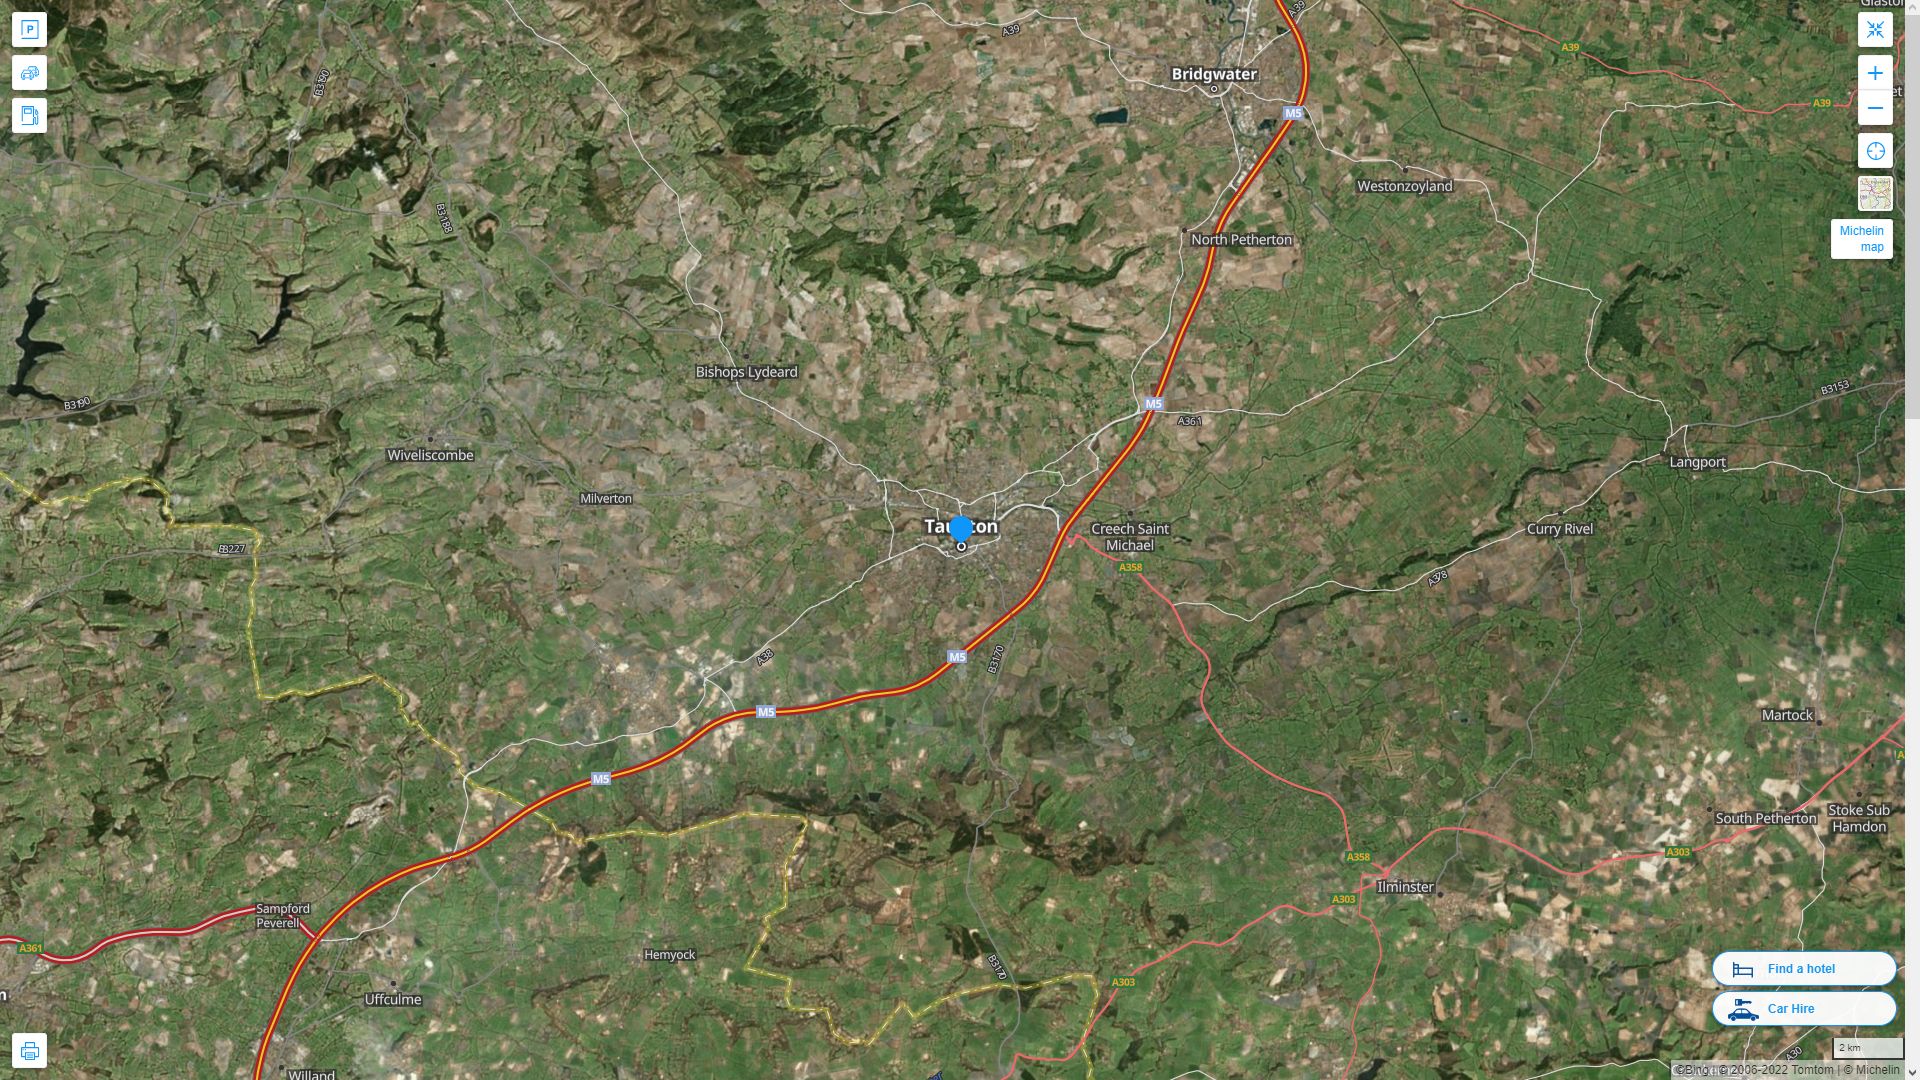 Taunton Royaume Uni Autoroute et carte routiere avec vue satellite